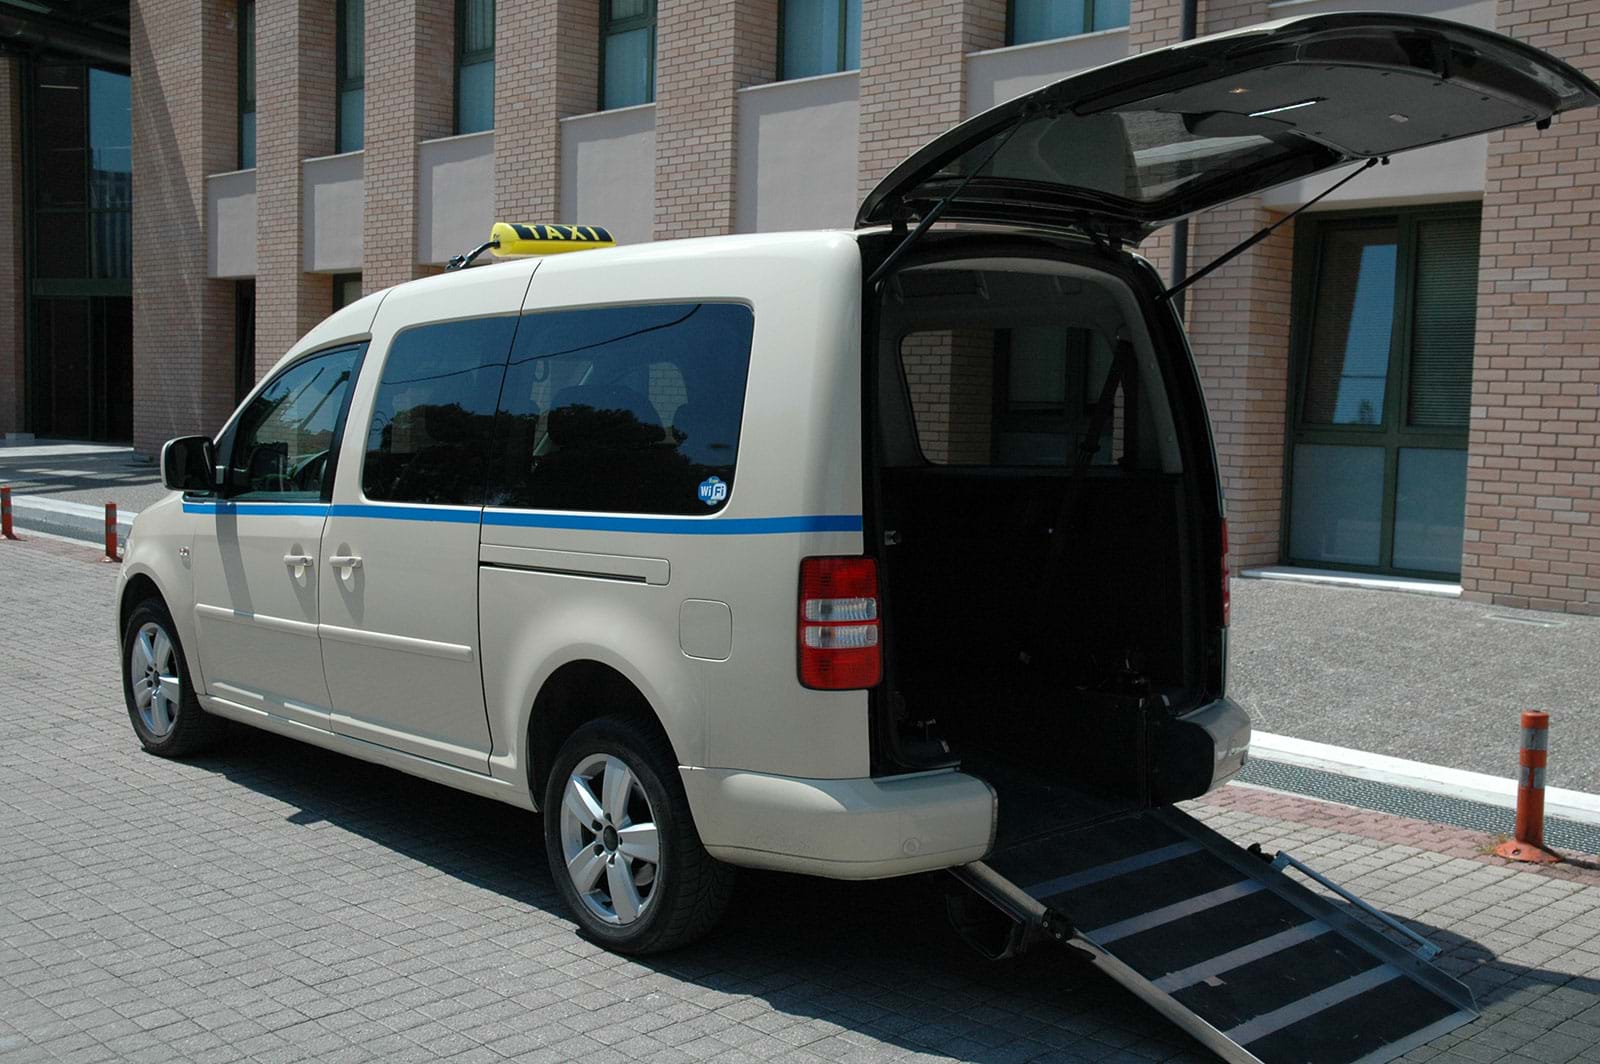 ειδικό ταξί με ράμπα για αναπηρικό αμαξίδιο